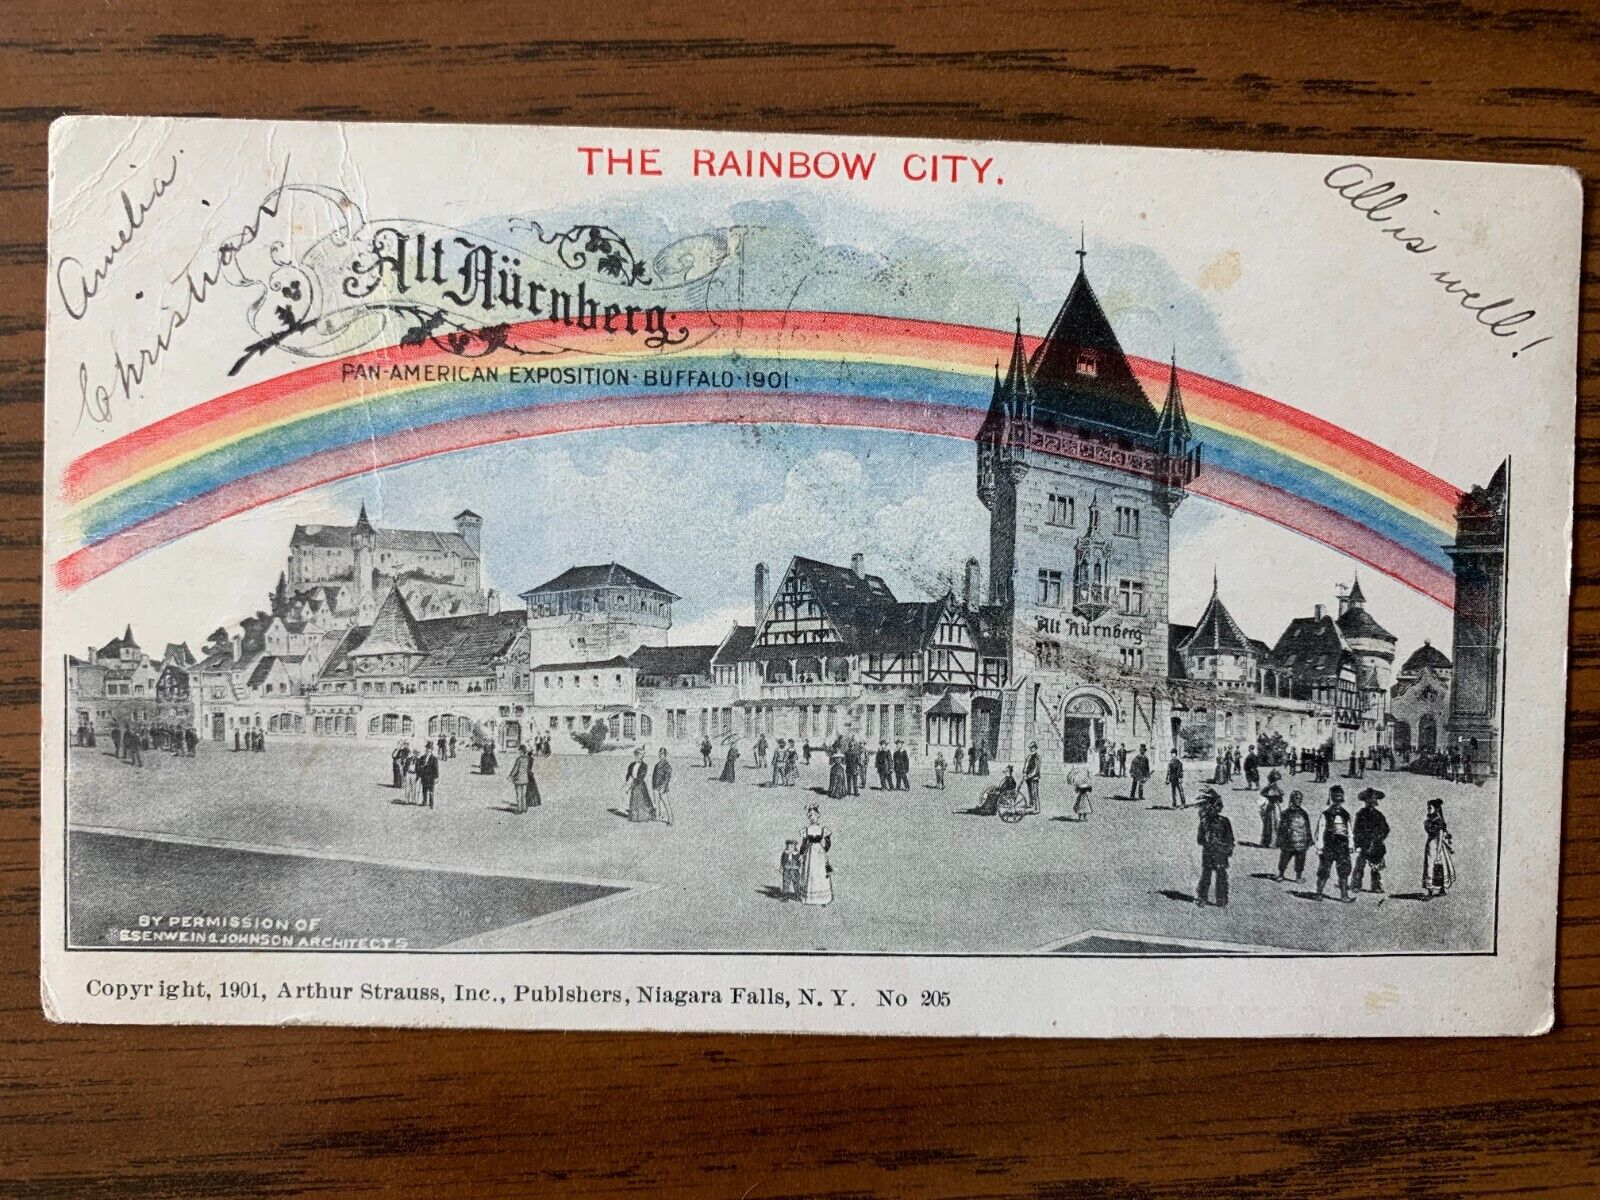 1901 Pan American Exposition, Buffalo the Rainbow City, NY. PMC